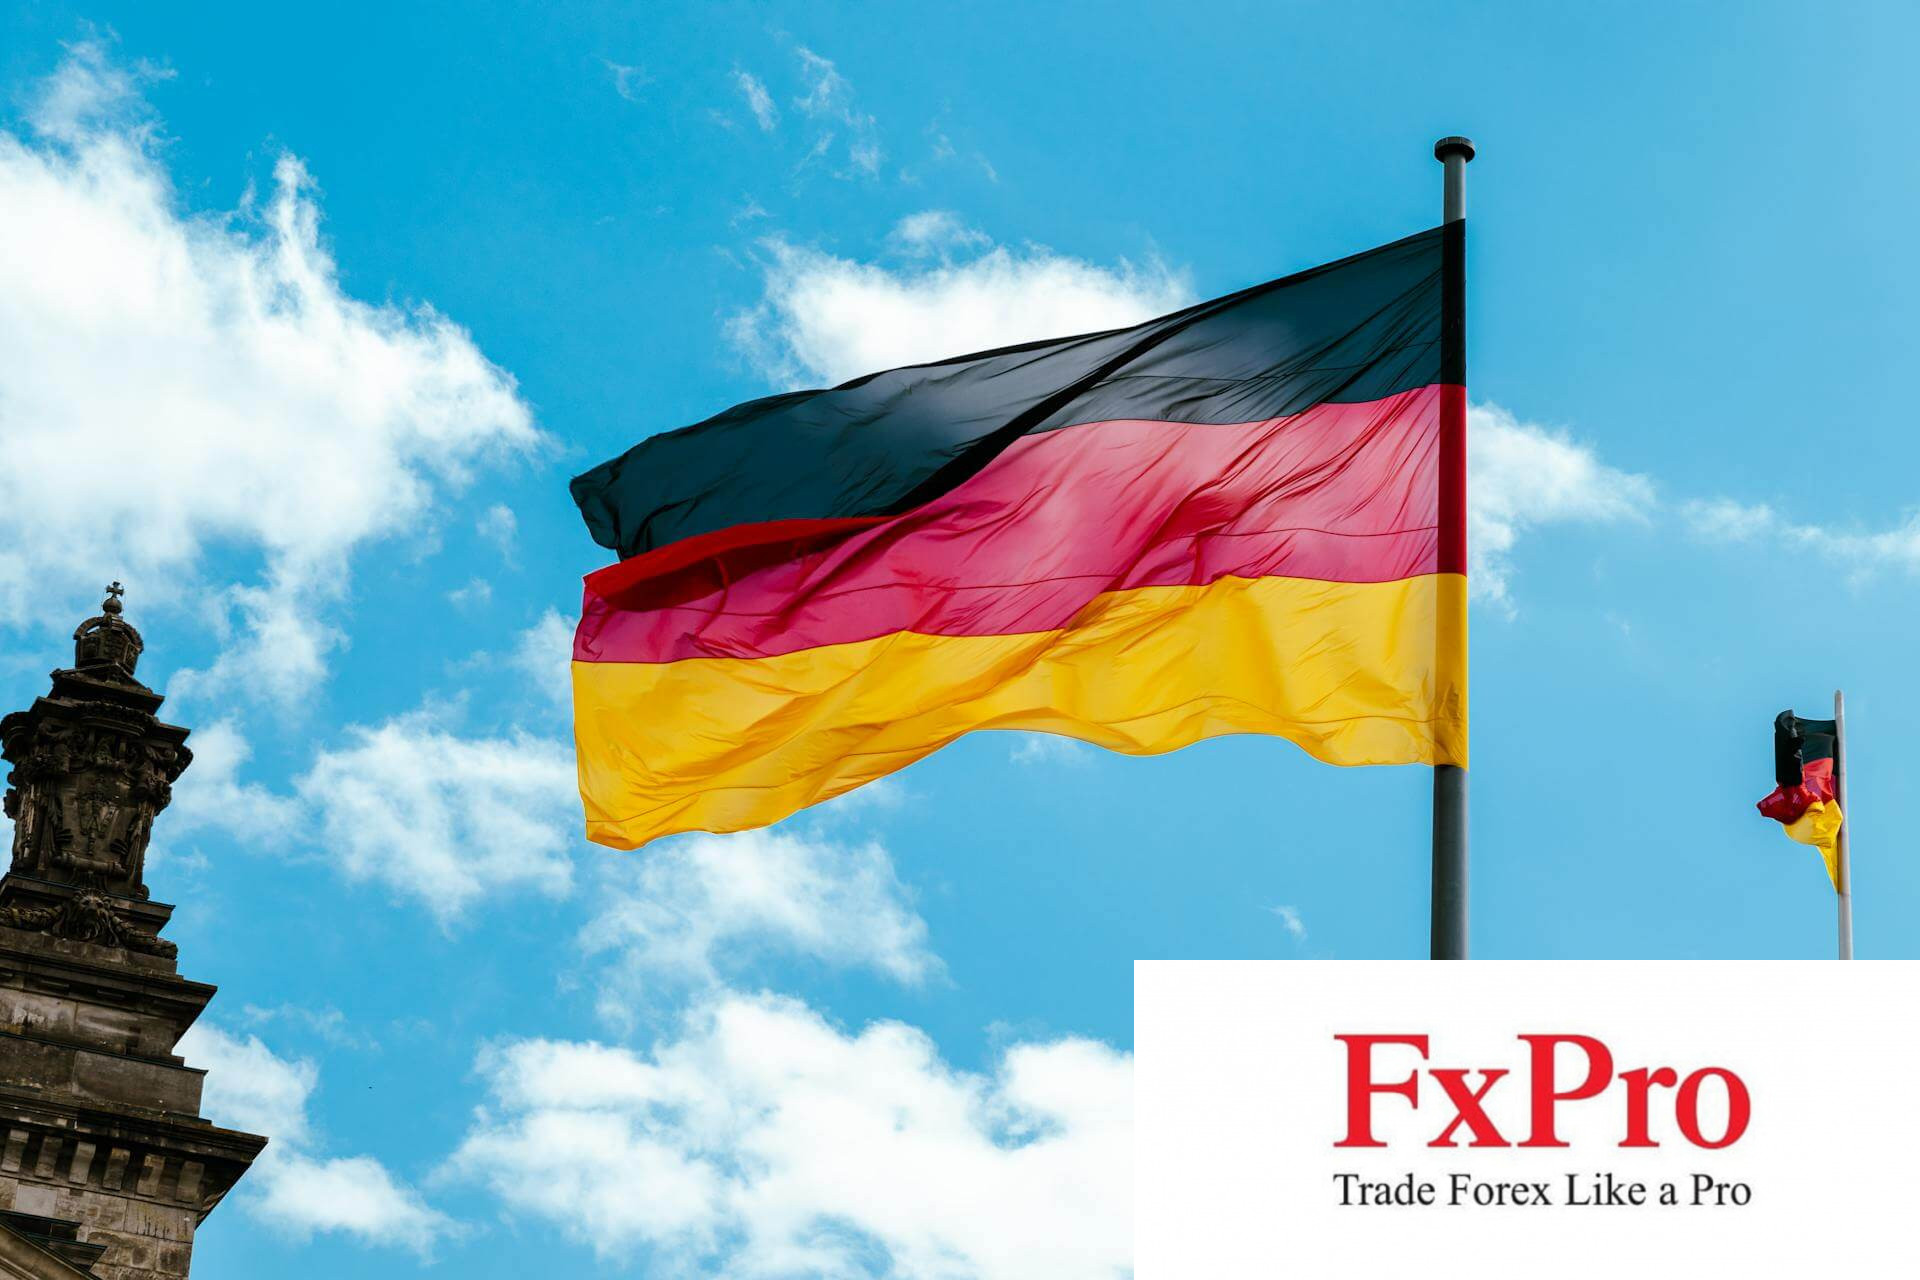 Tín hiệu lạc quan: Tình hình kinh doanh Đức chạm đỉnh 1 năm khi nền kinh tế phục hồi